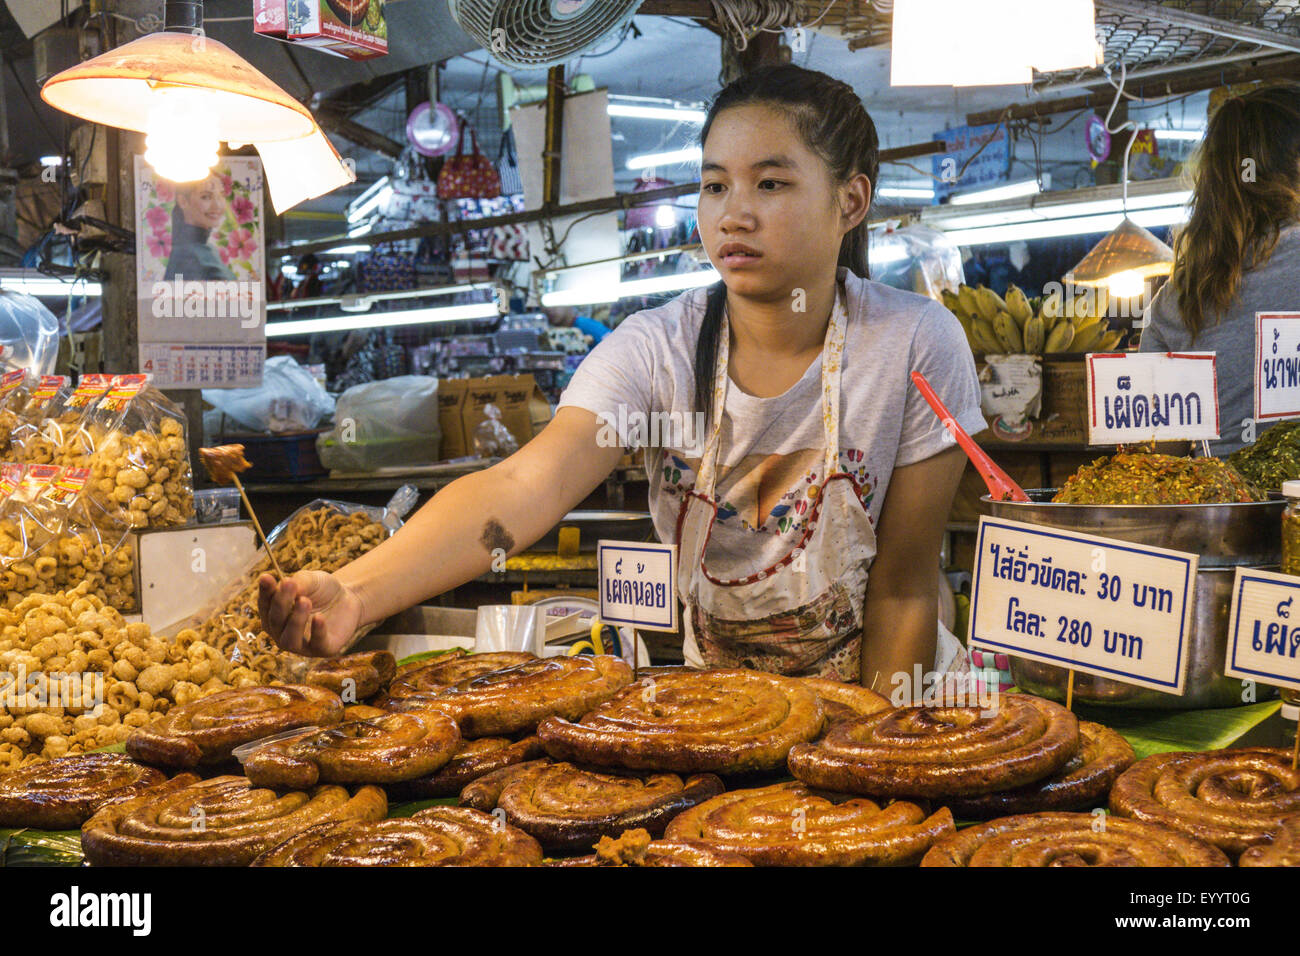 woman sells food at a market near Lampang, Thailand Stock Photo